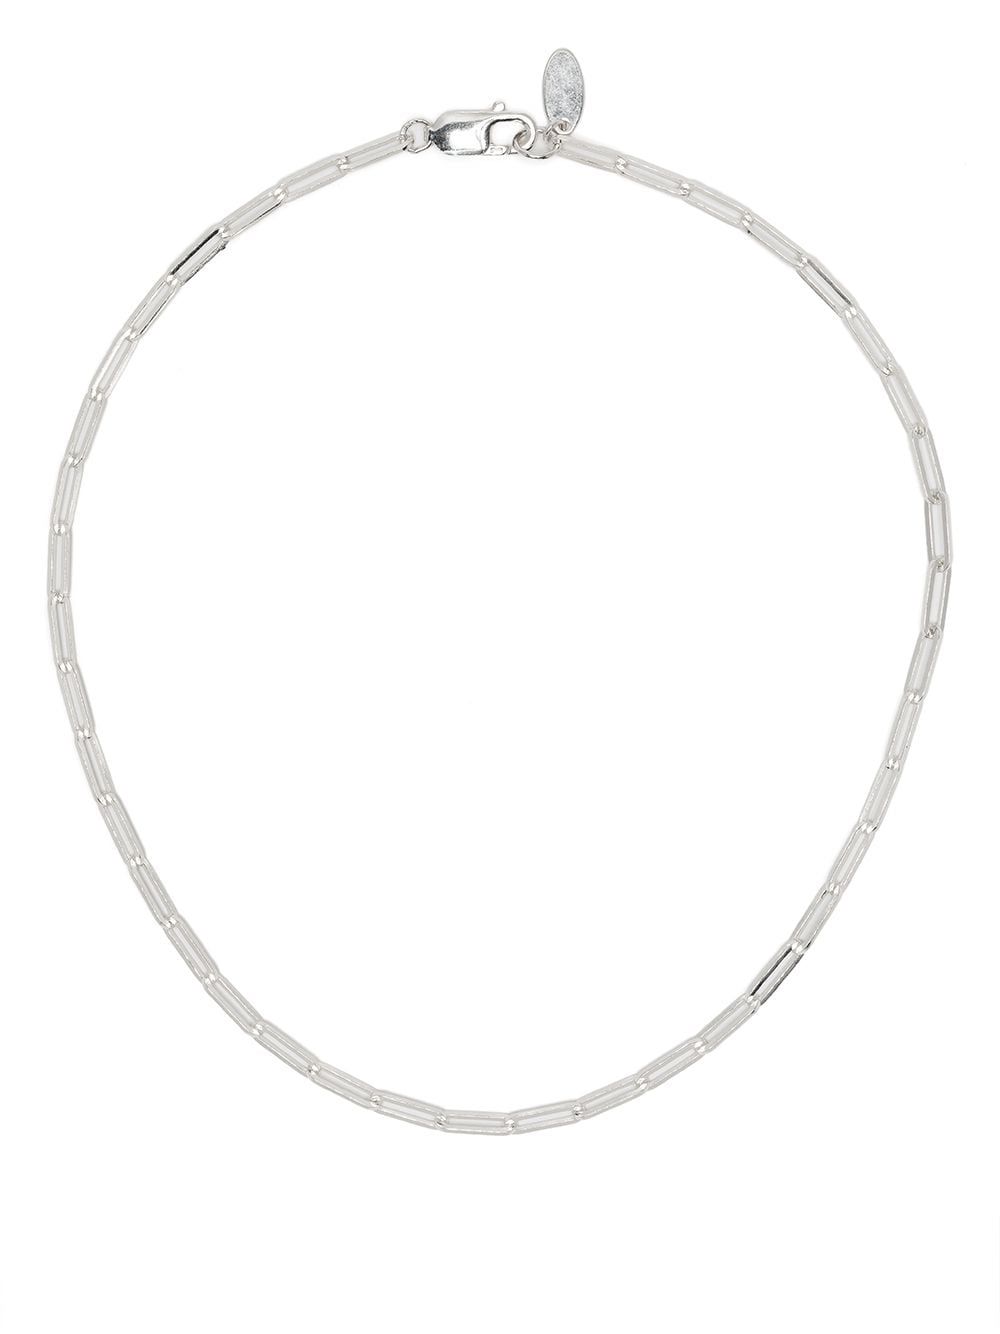 Victoria Strigini Thick Link Silver Chain Necklace